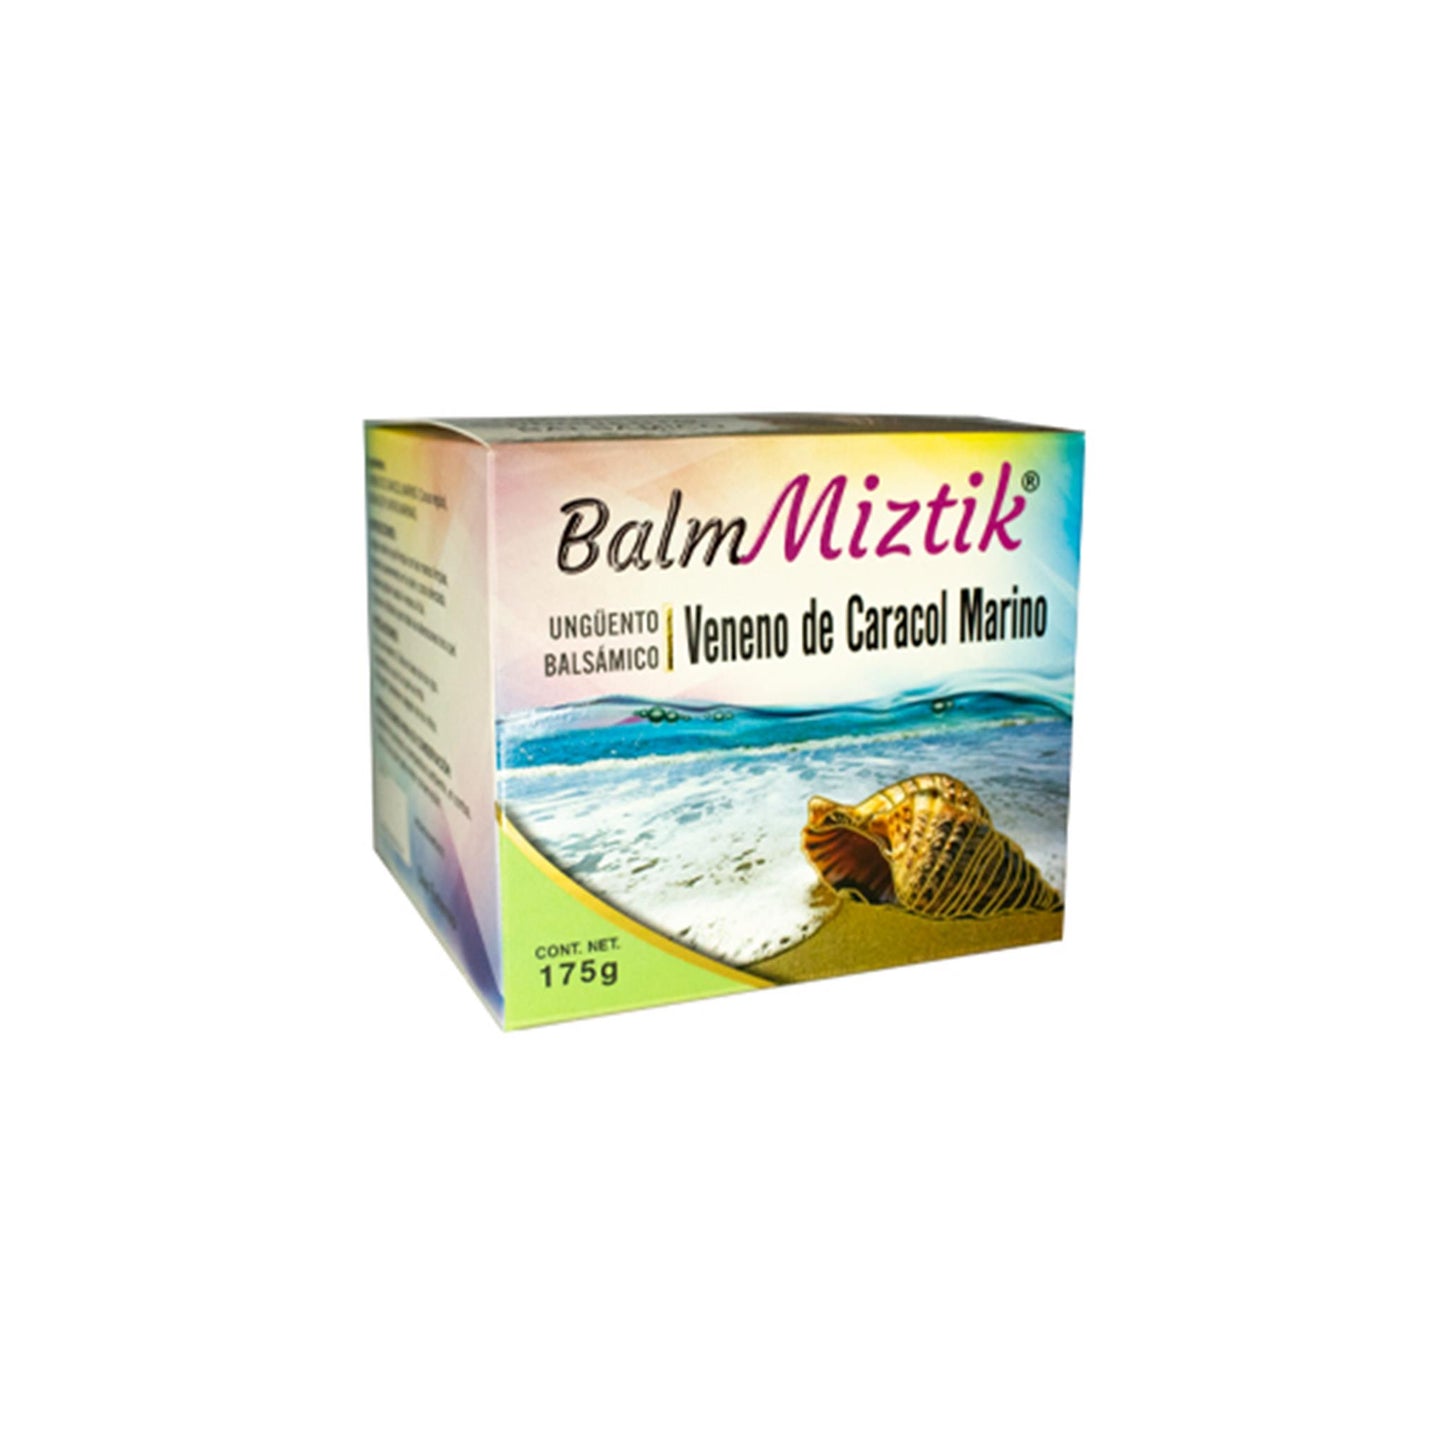 BALMMIZTIK ® Ungüento bálsamico de caracol marino tarro de 175g